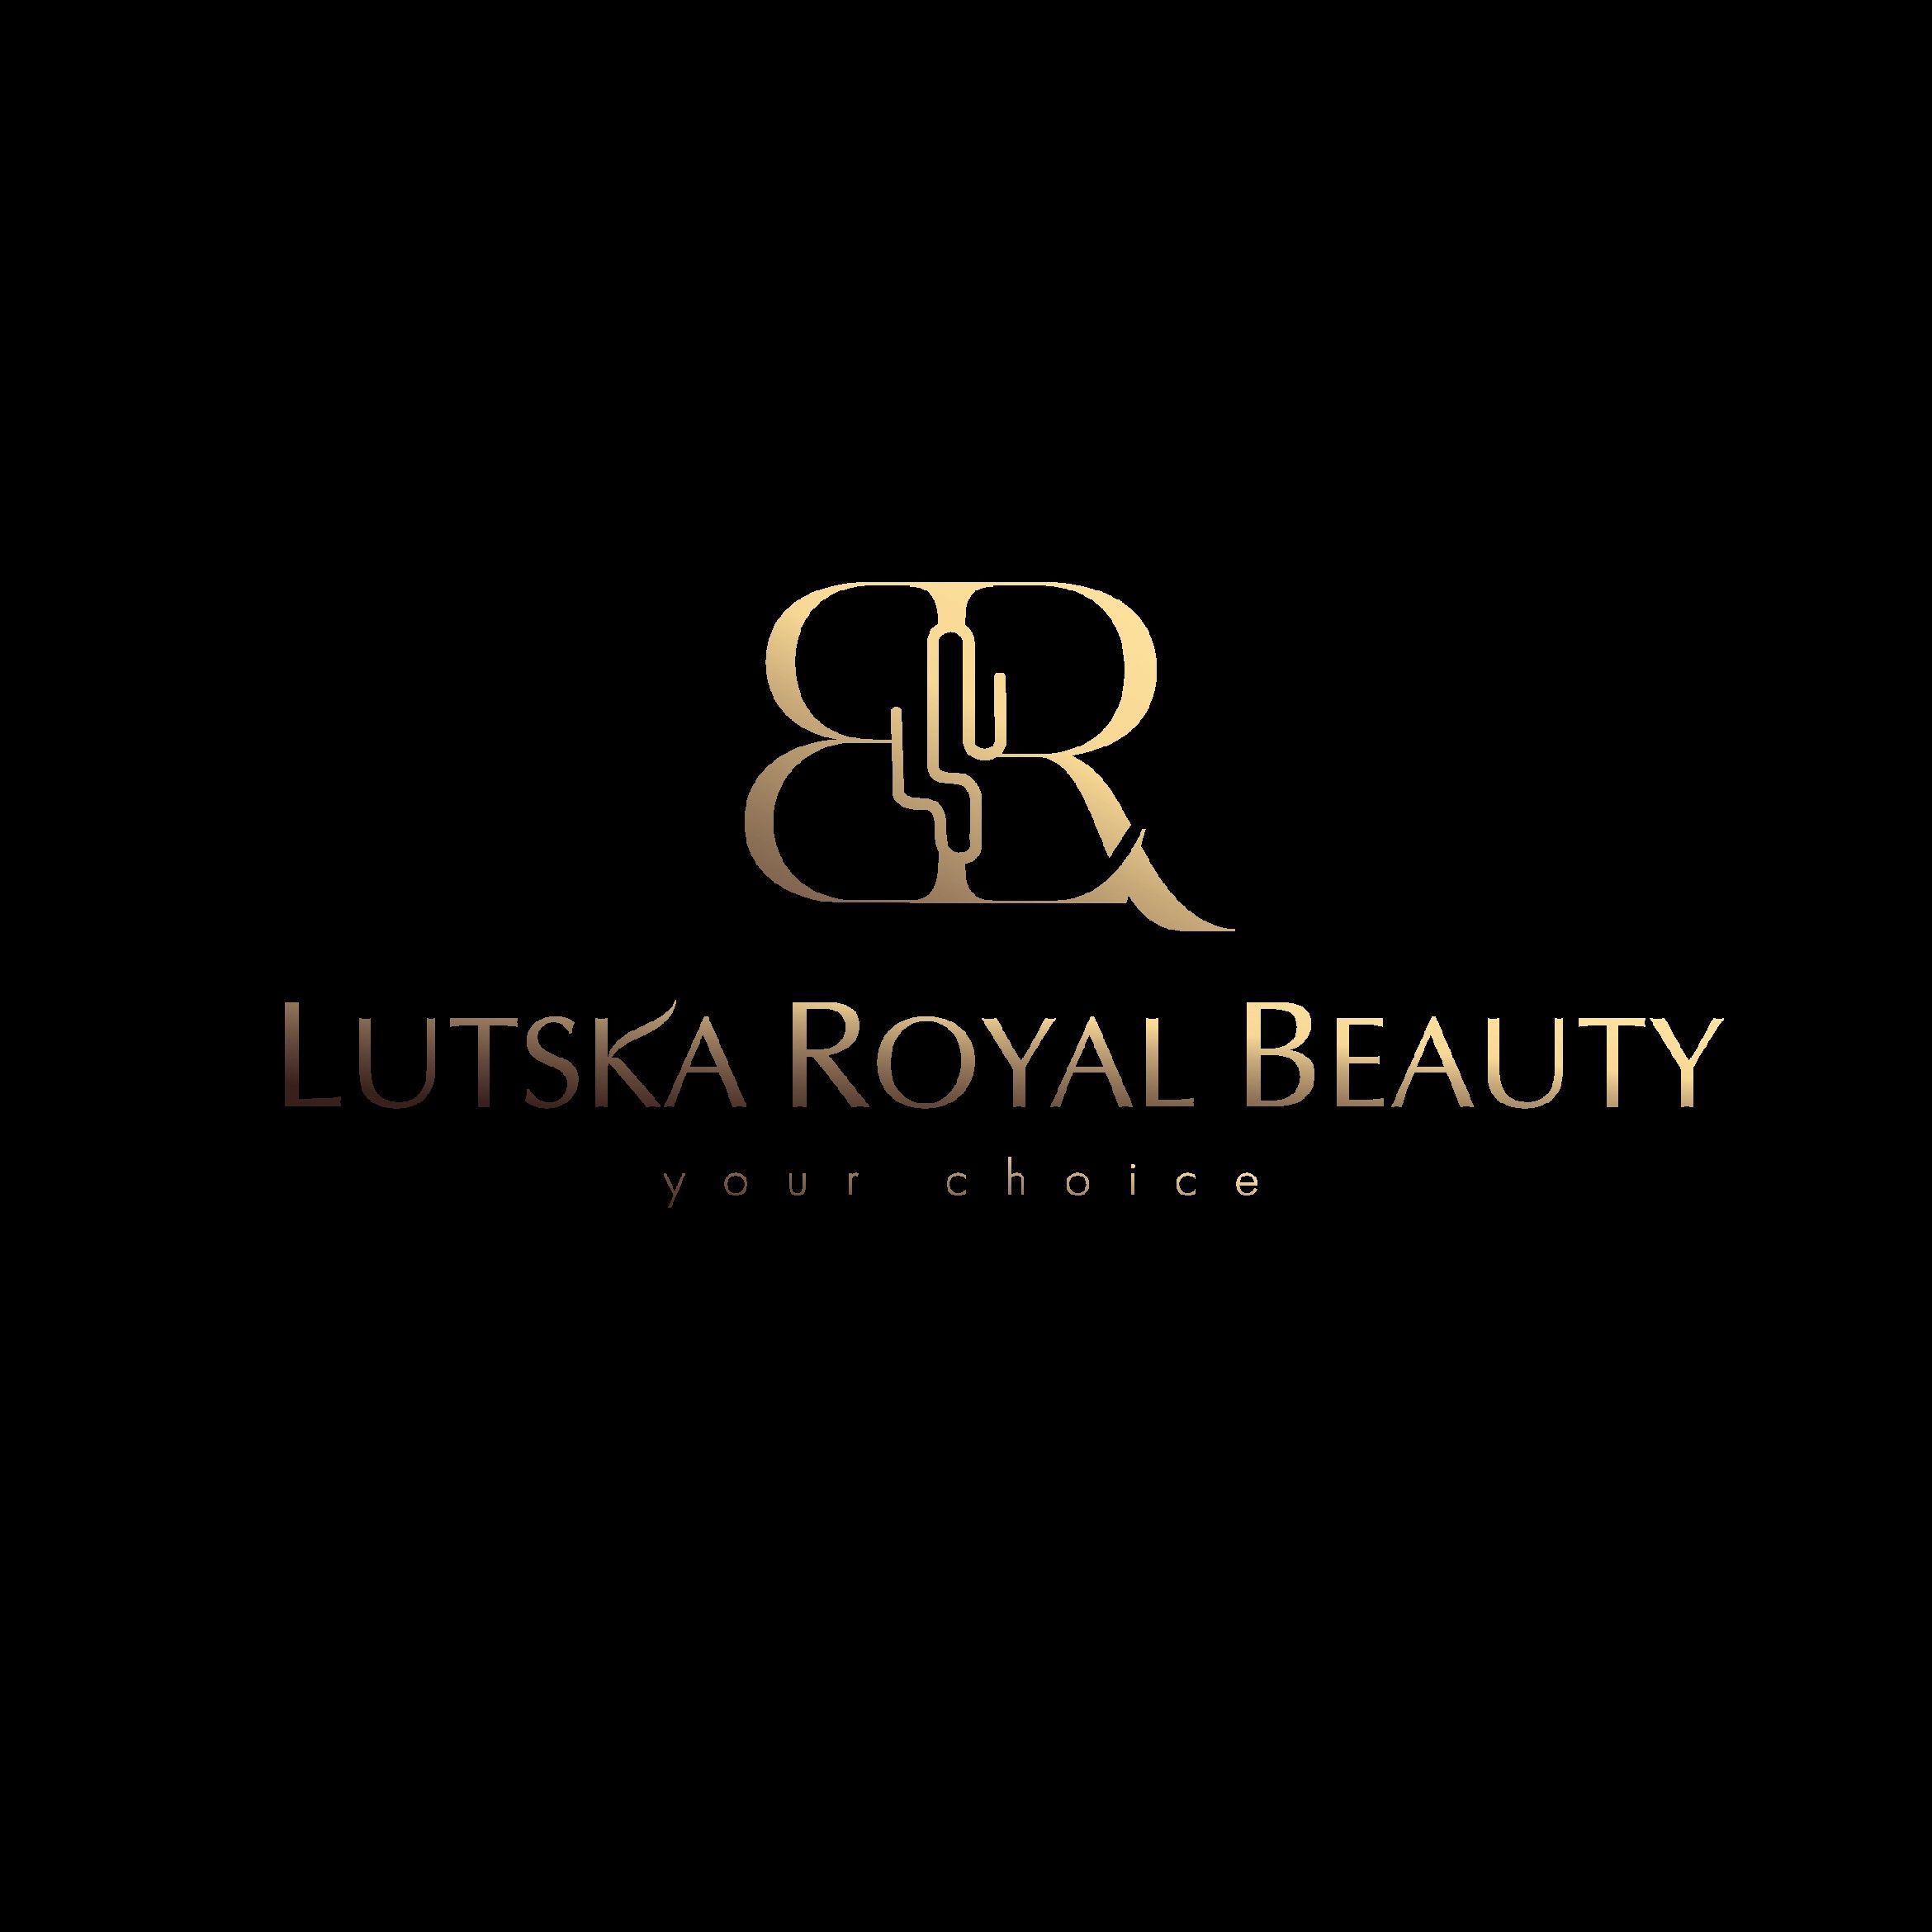 Lutska Royal Beauty, Śliska 10, 01-204, Warszawa, Wola